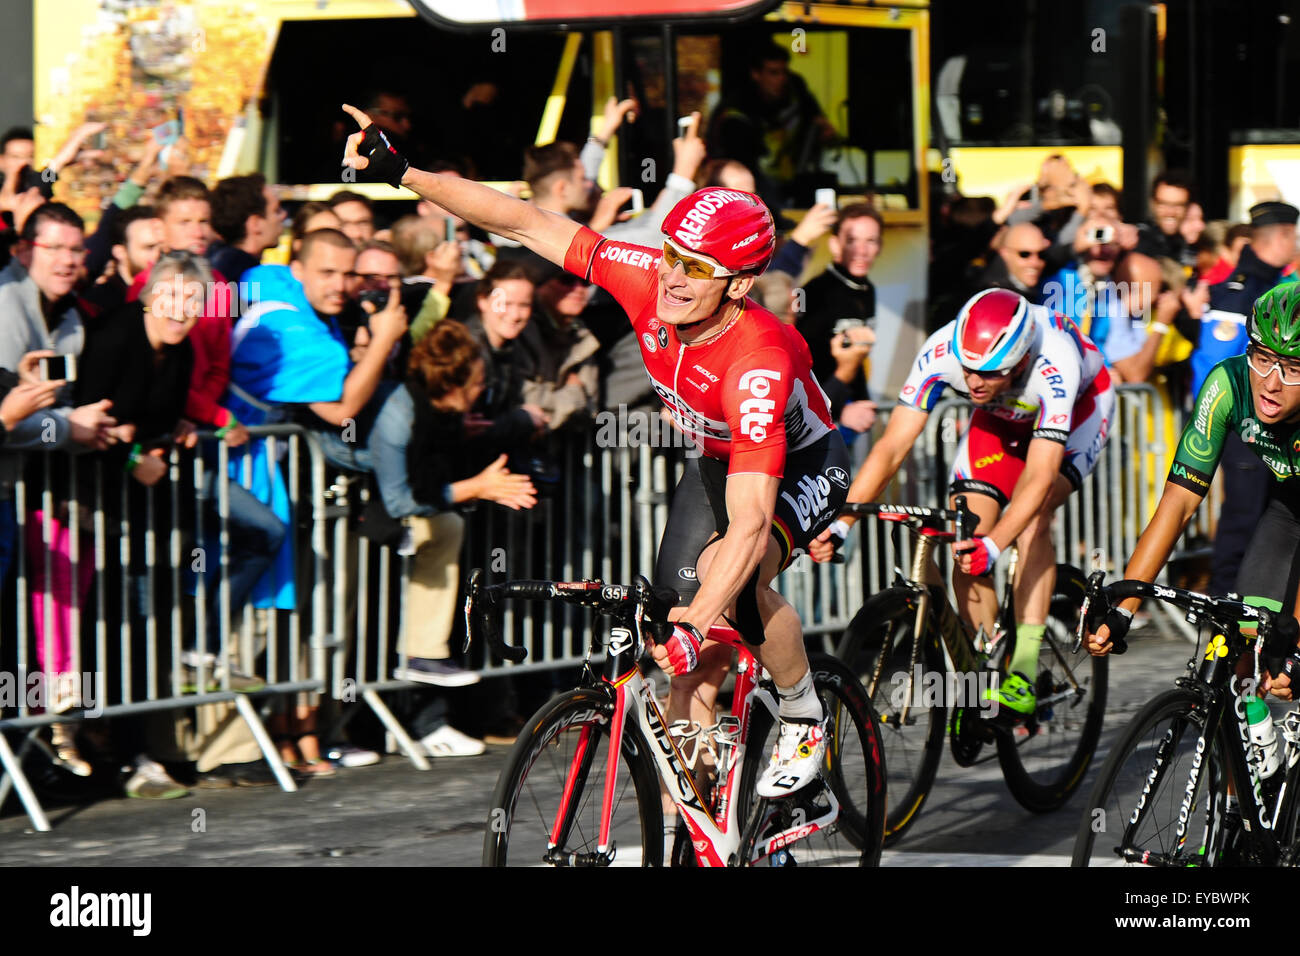 Parigi, Francia. Luglio 26, 2015. Andre Greipel (GER) del team Lotto-Soudal alza la mano vincente dopo la ventunesima e ultima tappa del Tour de France a Parigi. Foto: Miroslav Dakov/ Alamy Live News Foto Stock